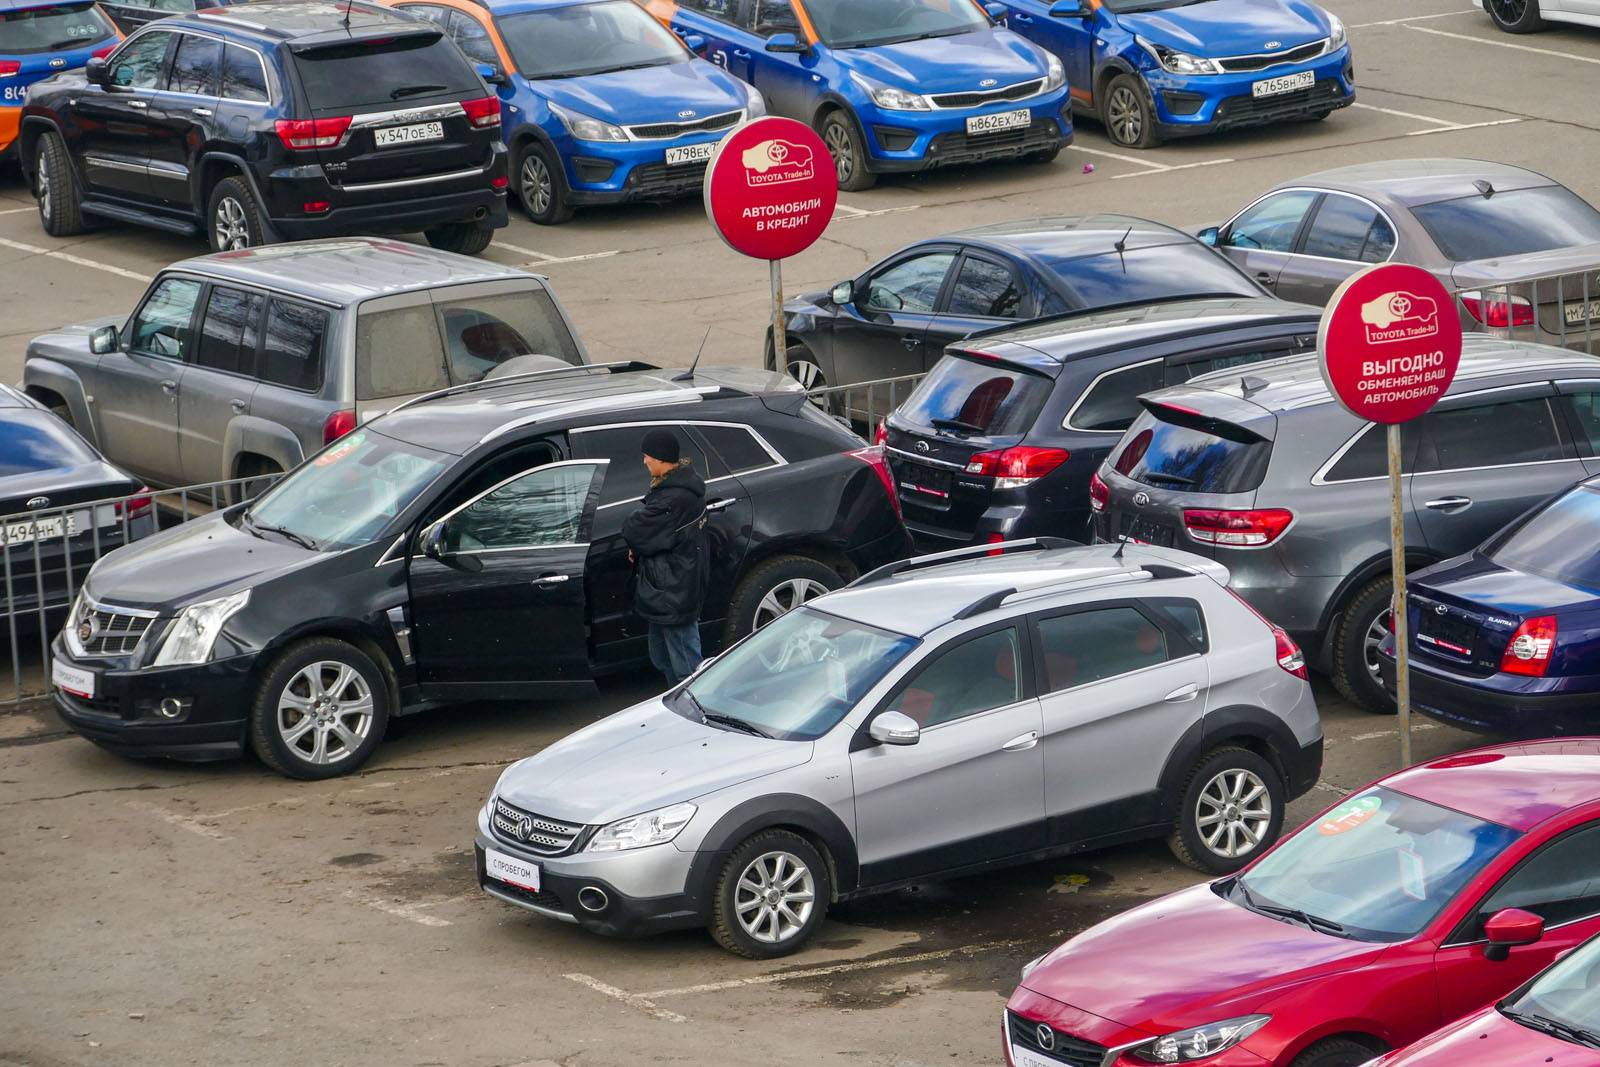 Более половины подержанных машин продается со скрученным пробегом